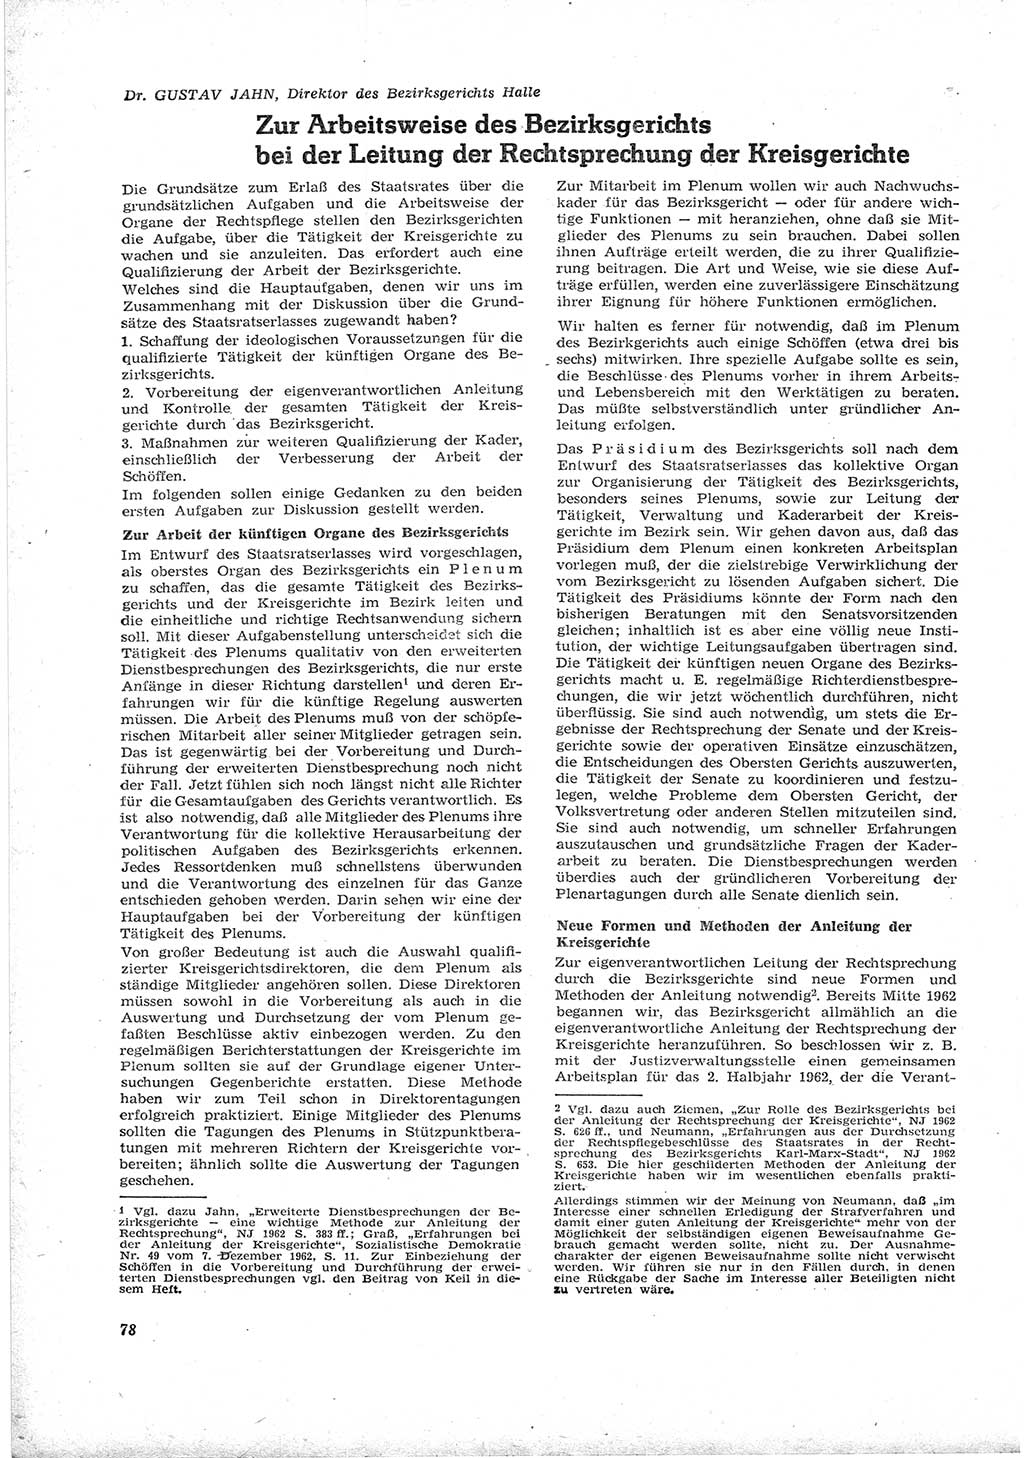 Neue Justiz (NJ), Zeitschrift für Recht und Rechtswissenschaft [Deutsche Demokratische Republik (DDR)], 17. Jahrgang 1963, Seite 78 (NJ DDR 1963, S. 78)